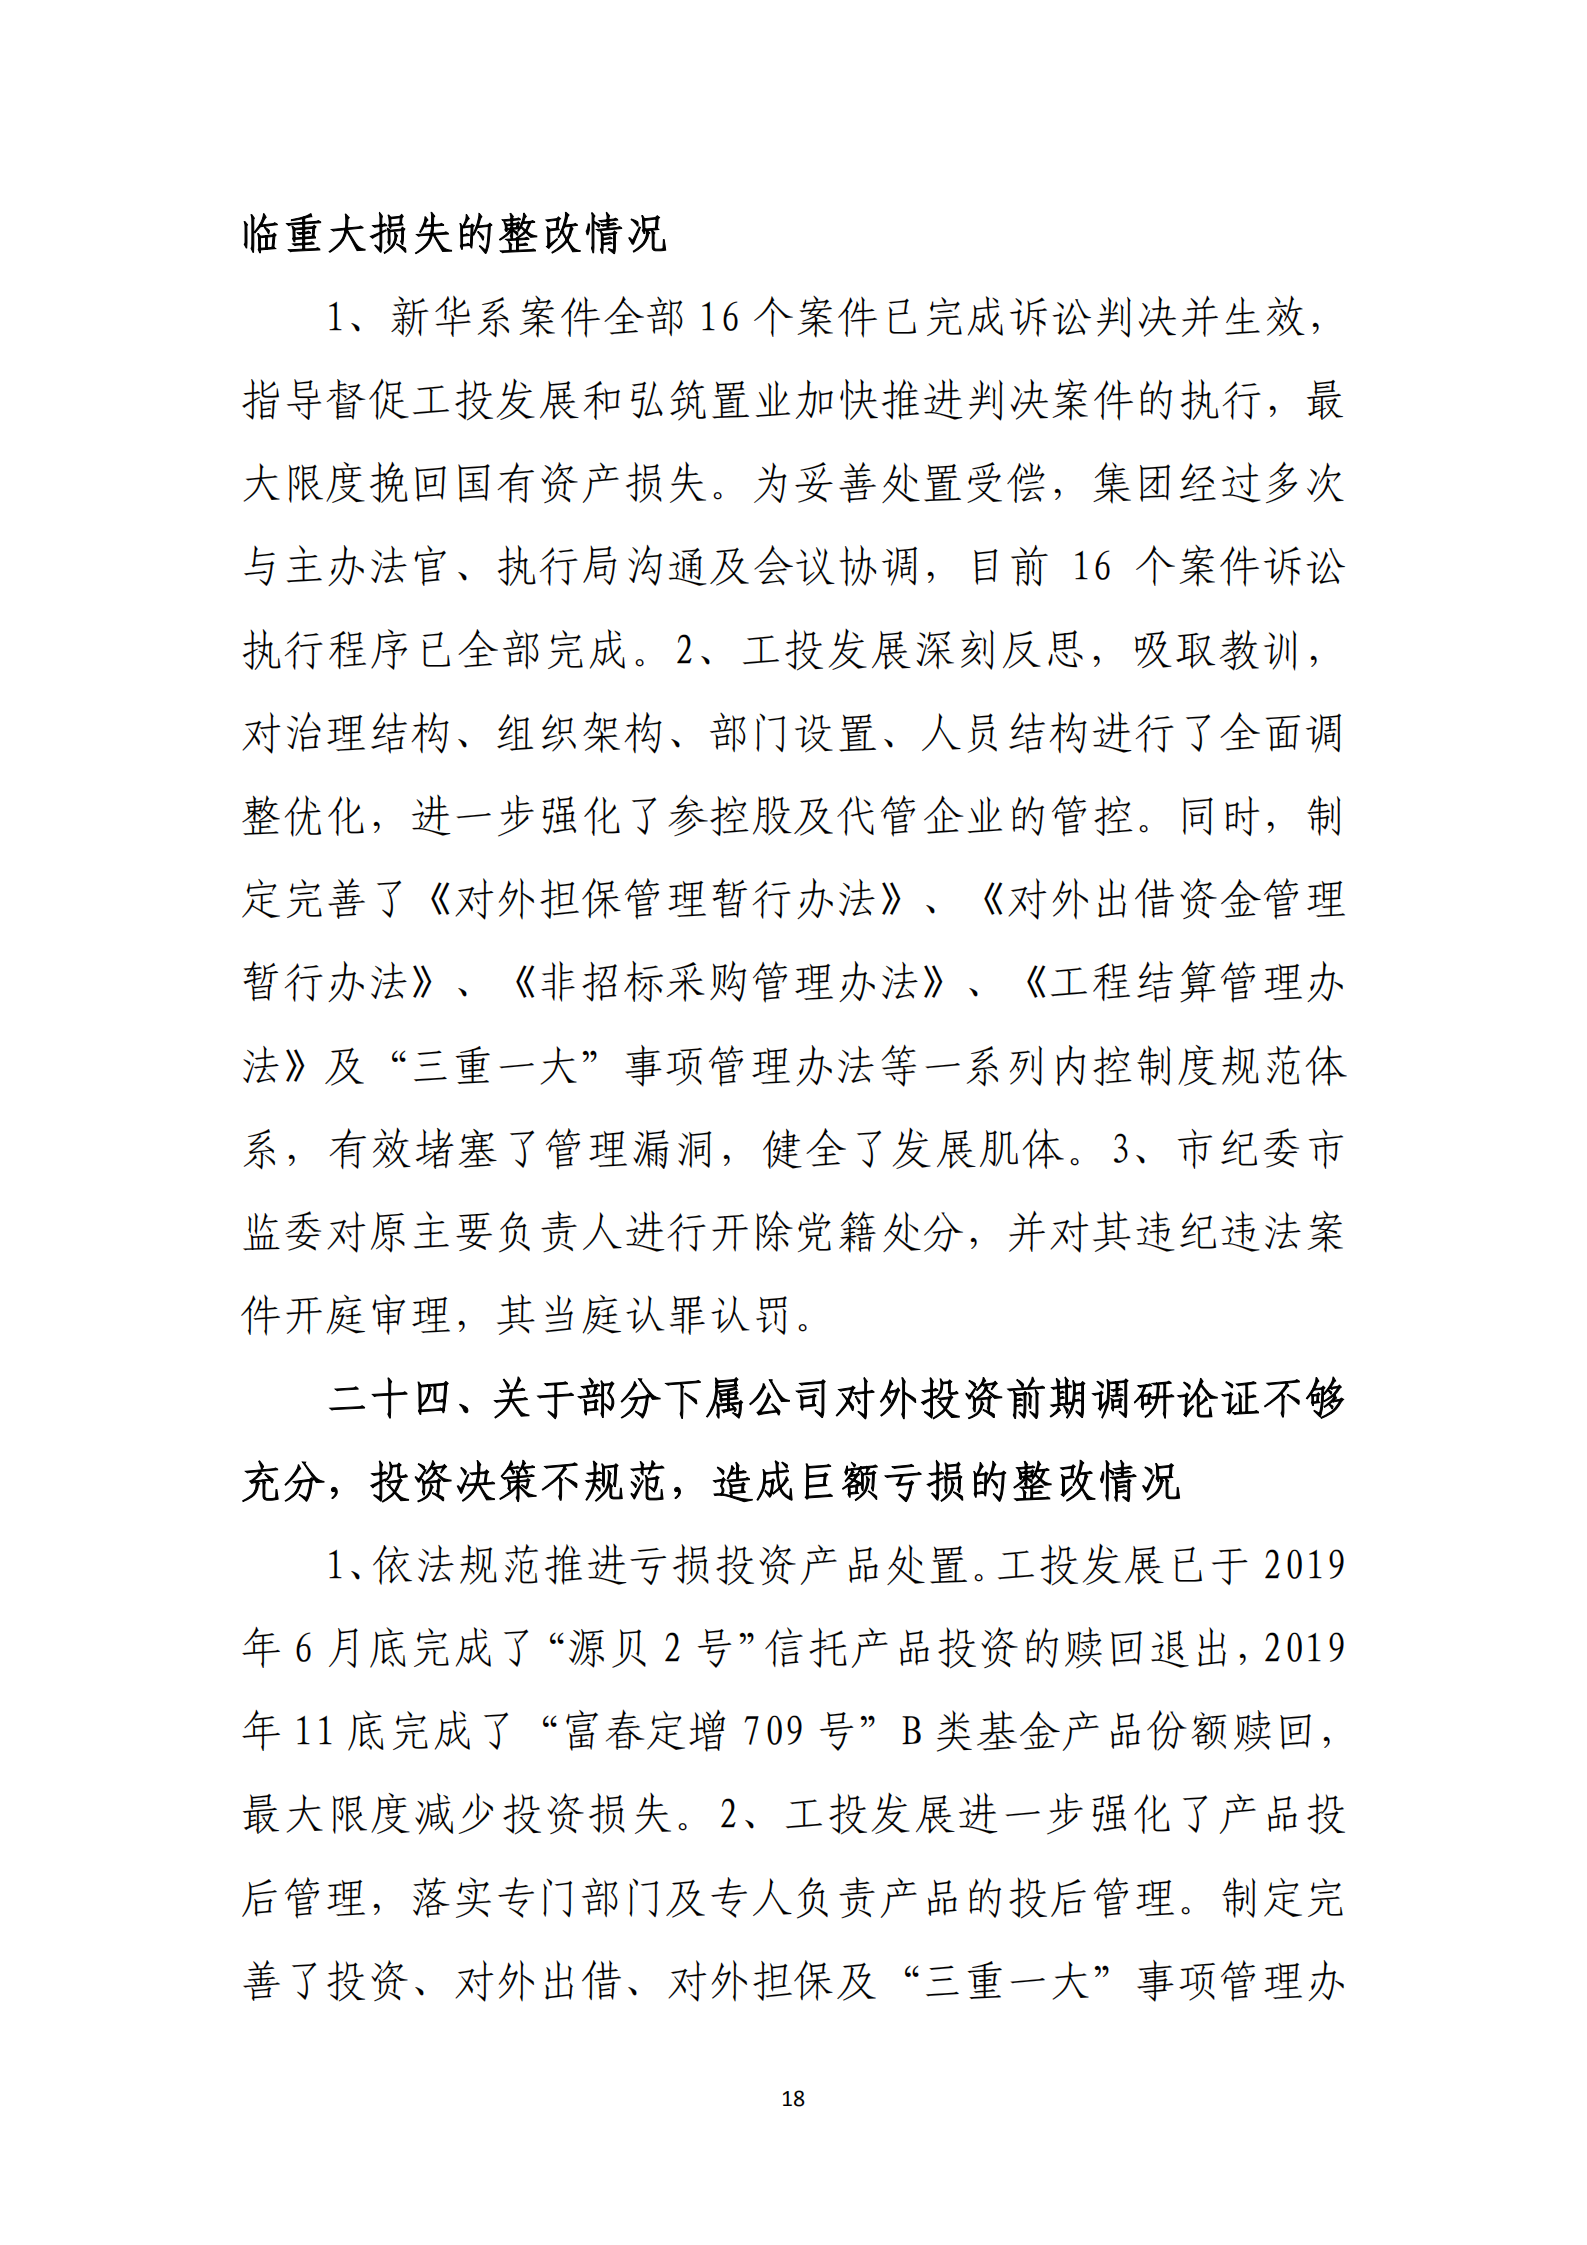 大阳城集团娱乐游戏党委关于巡察整改情况的通报_17.png